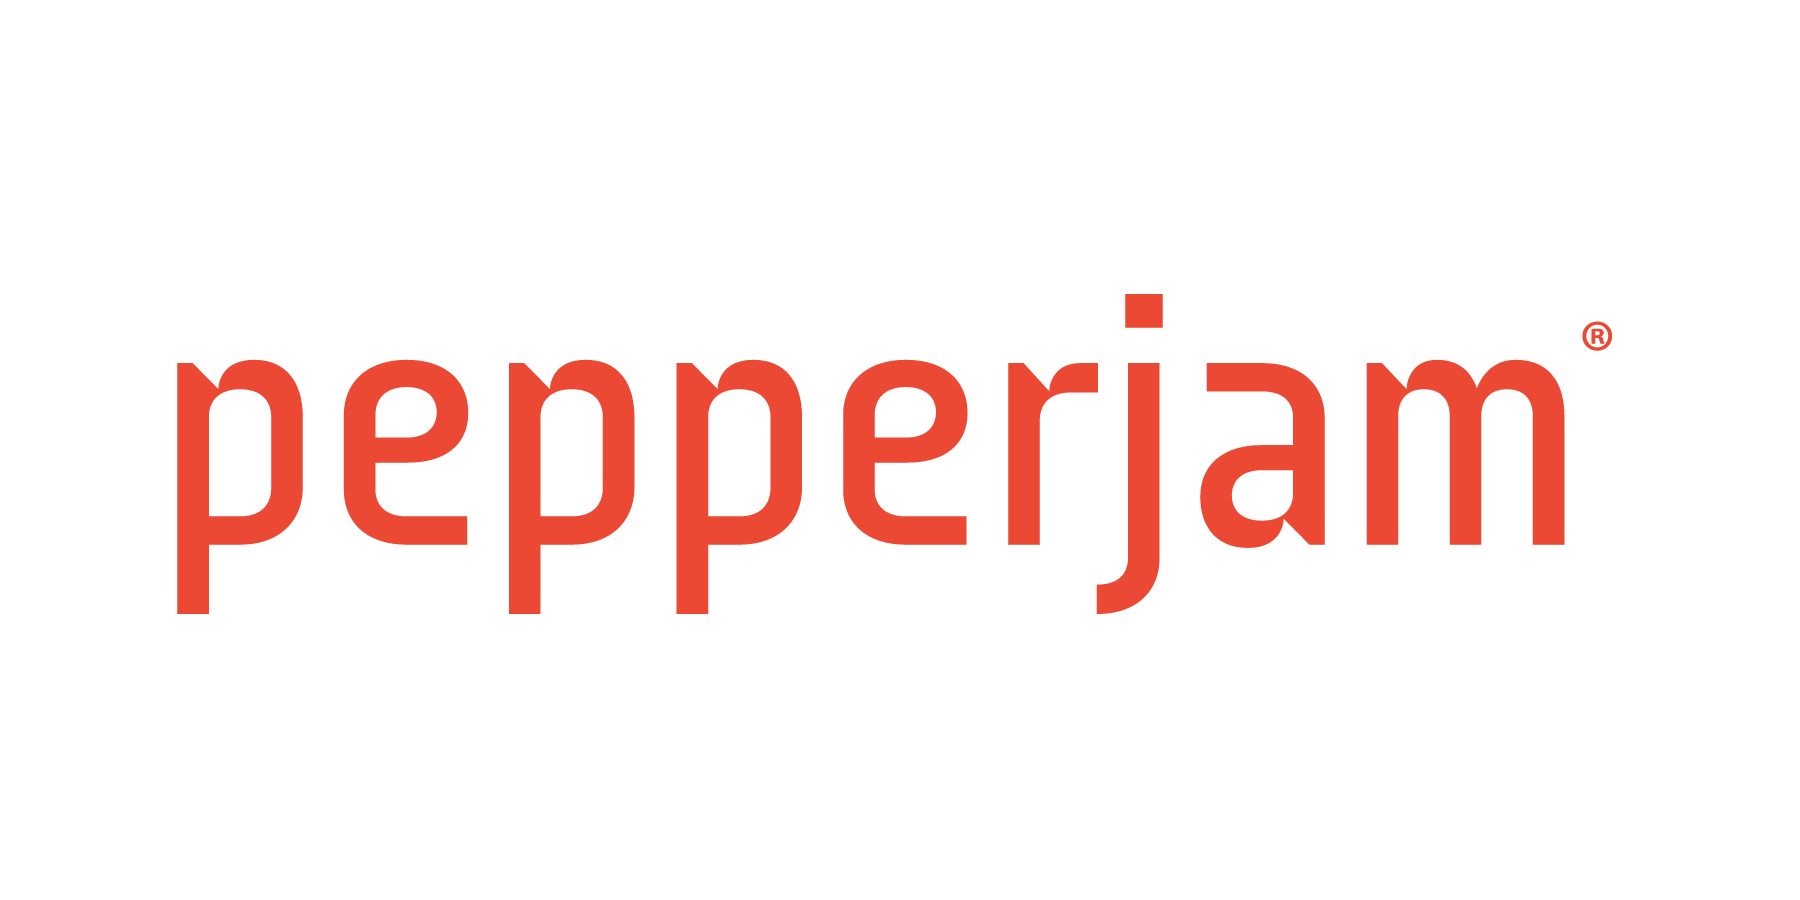 Pepperjam logo